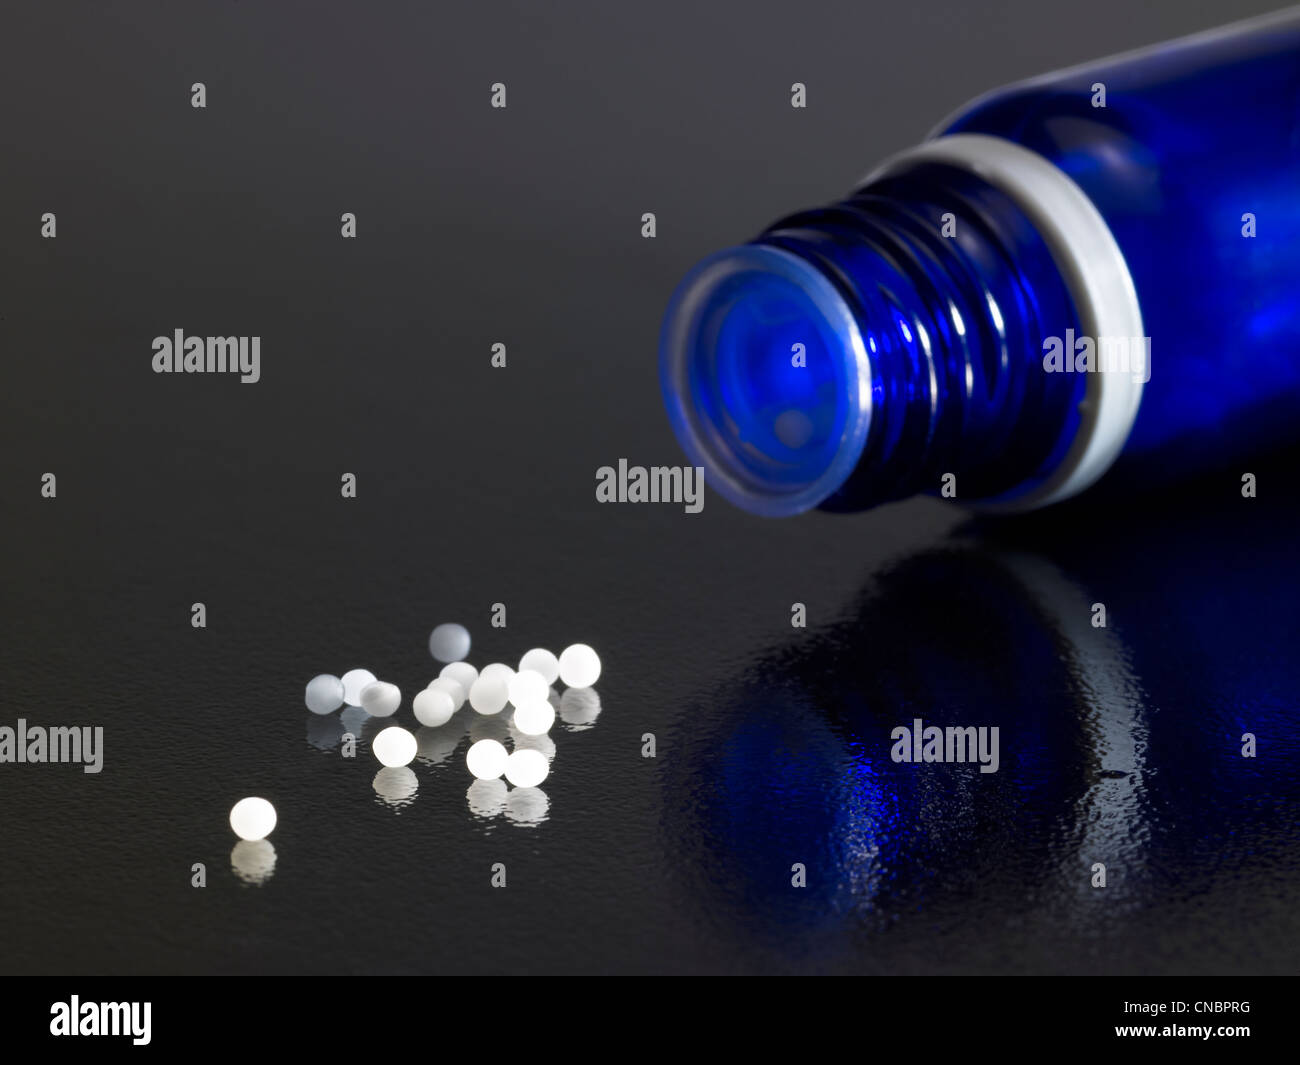 Dettaglio di aprire una piccola bottiglia di colore blu scuro sulla massa riflettente con globuli intorno Foto Stock